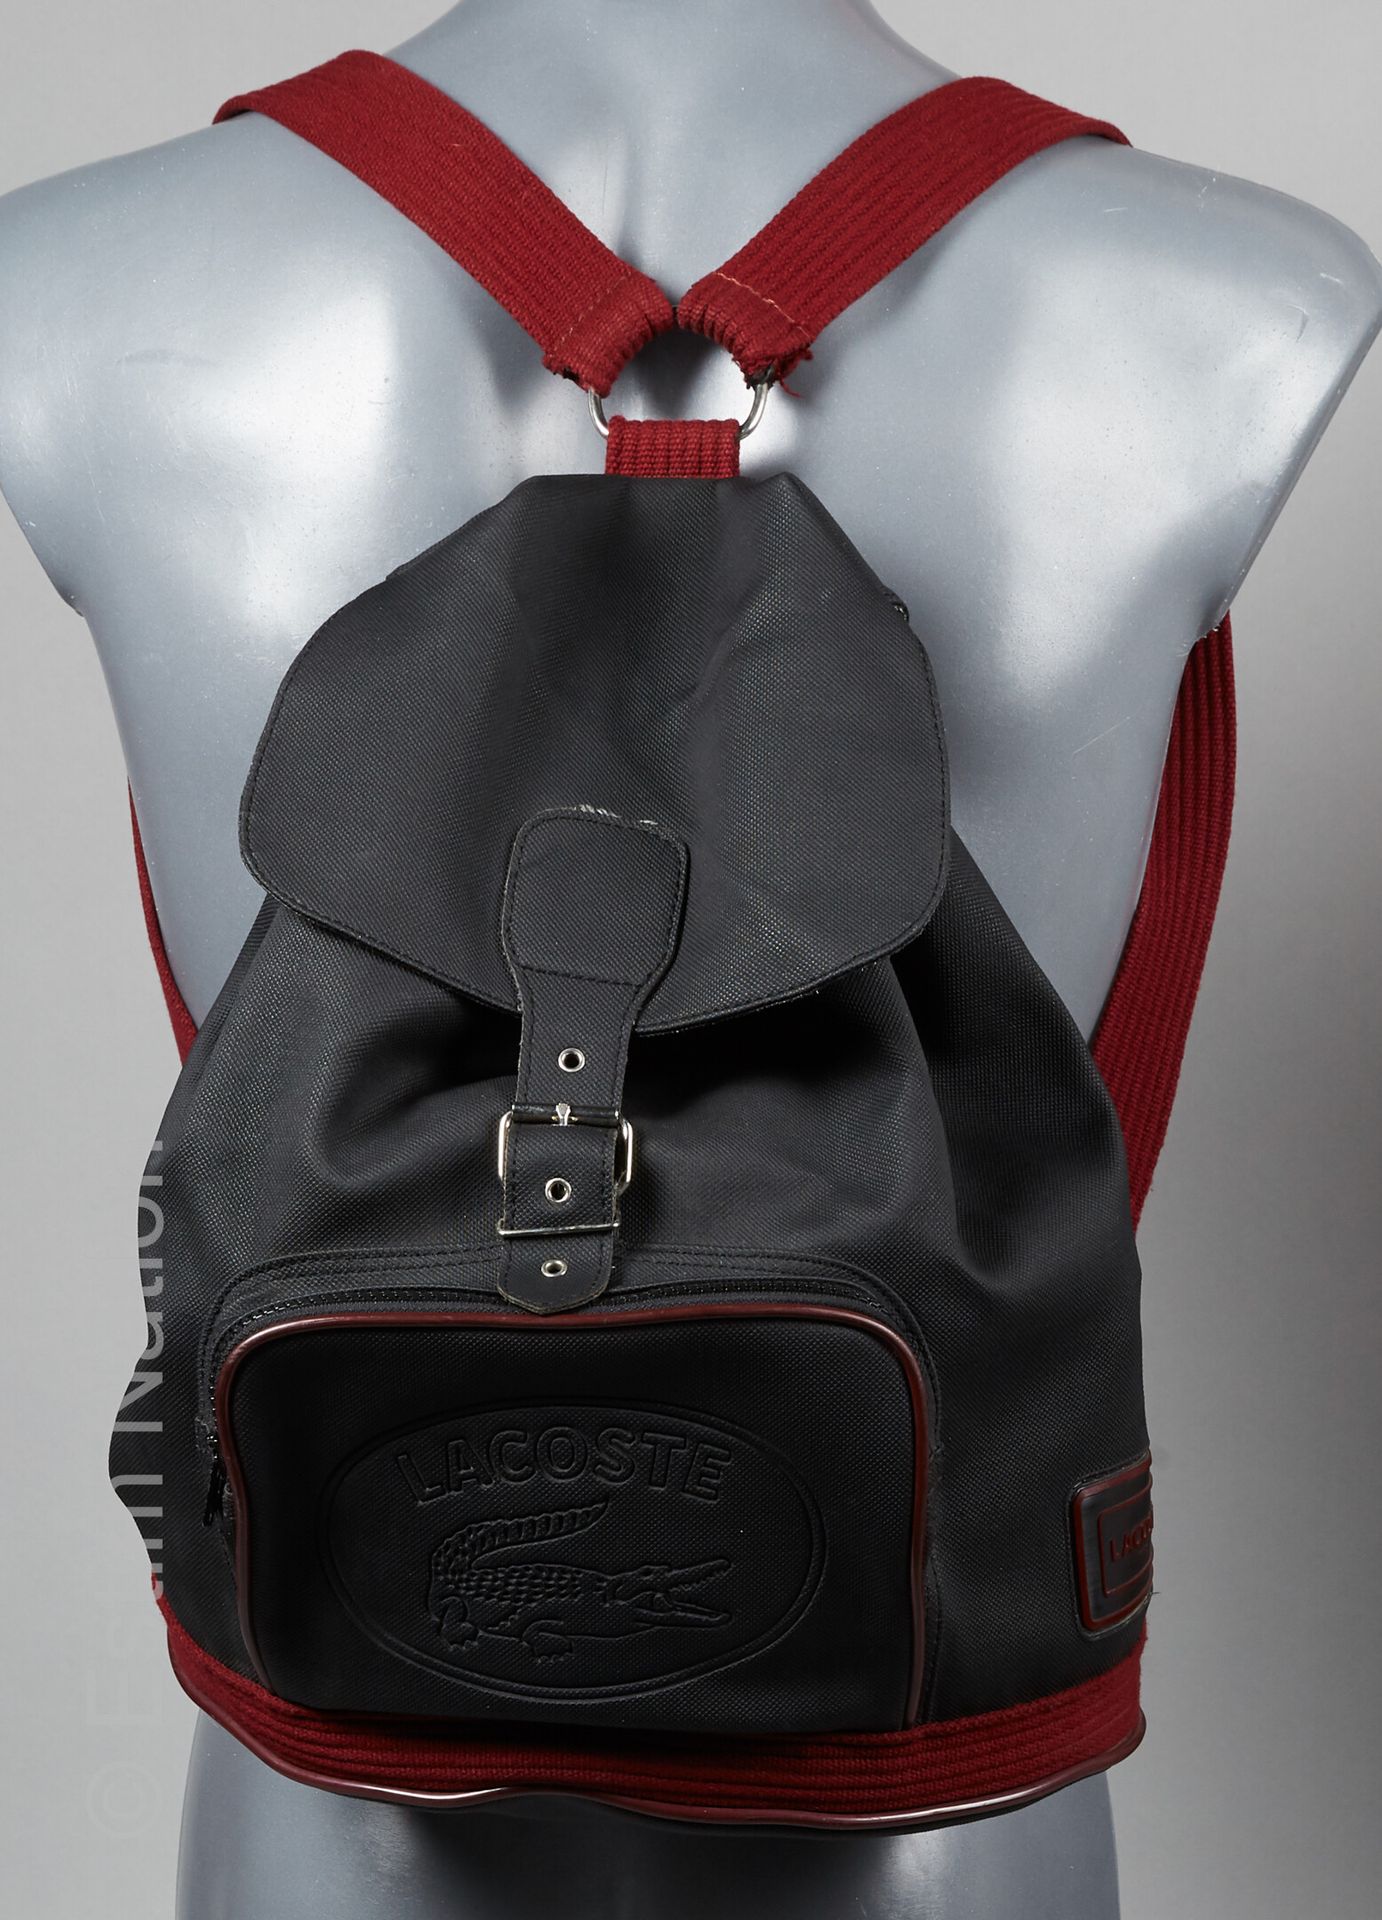 LACOSTE 黑色复合帆布背包，酒红色背带，前面有拉链口袋（38 x 30 x 11厘米）（非常轻微的痕迹）。